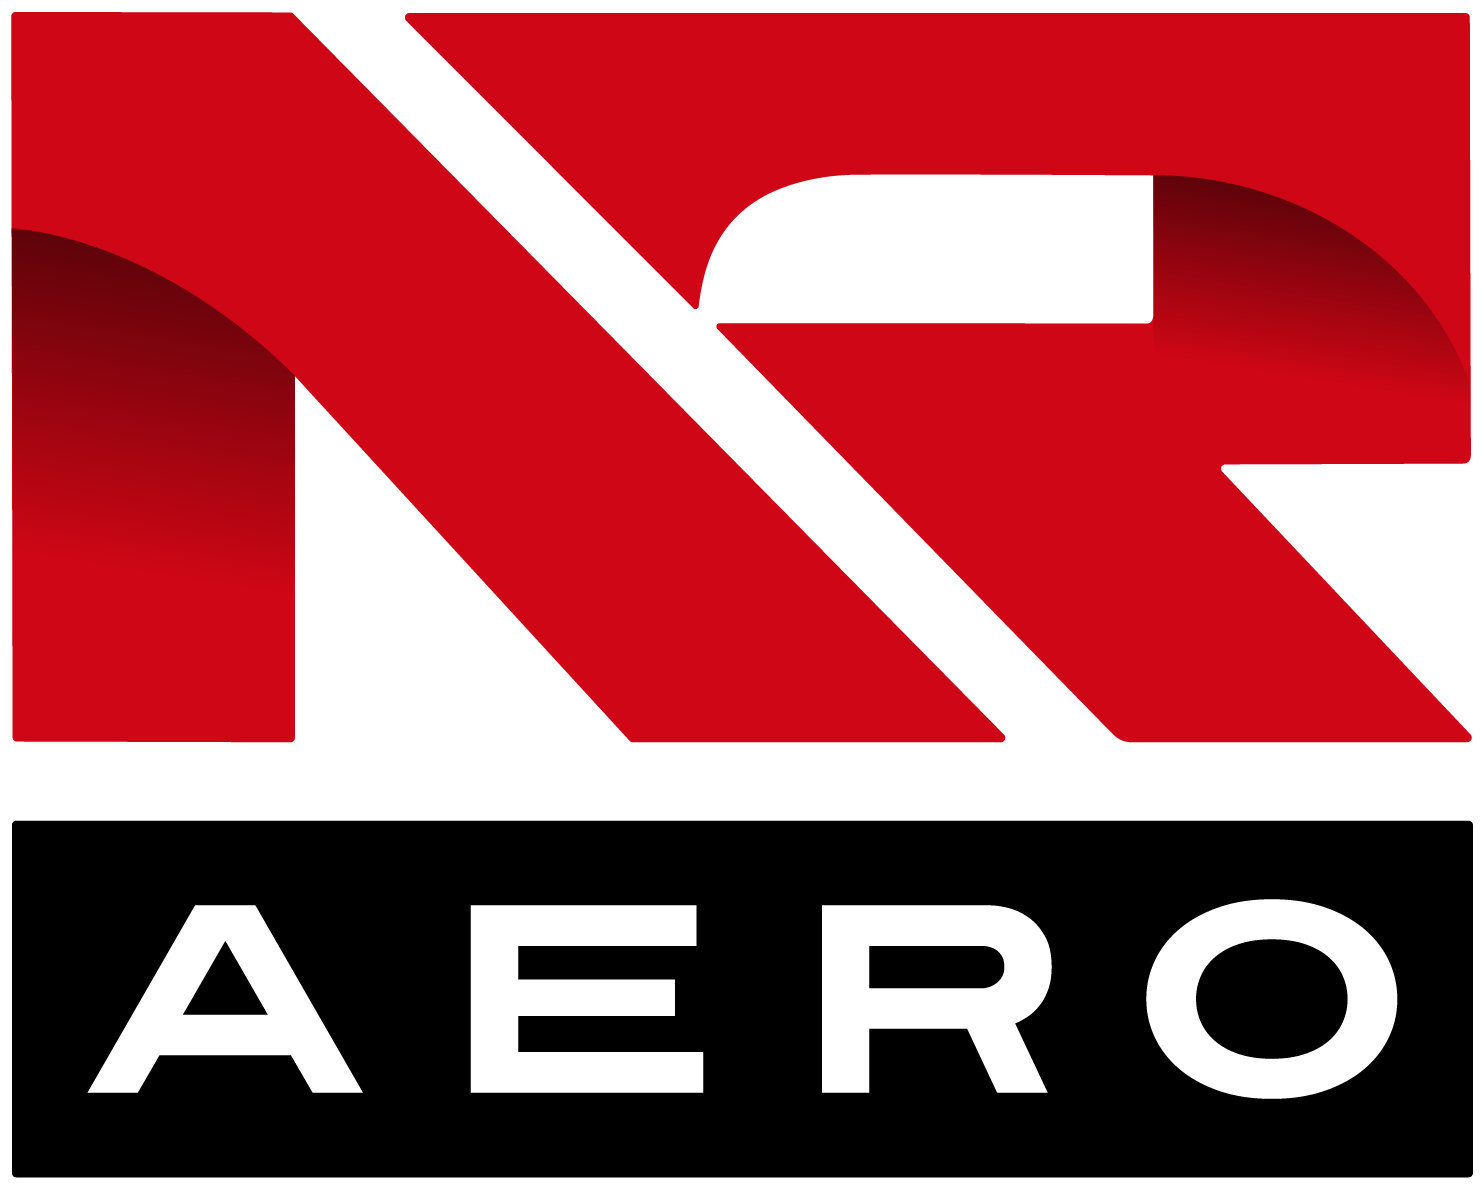 NR Aero Logo_Red Black.png__PID:bbfc6493-5bdf-4637-9c3b-9a7a90cc9255